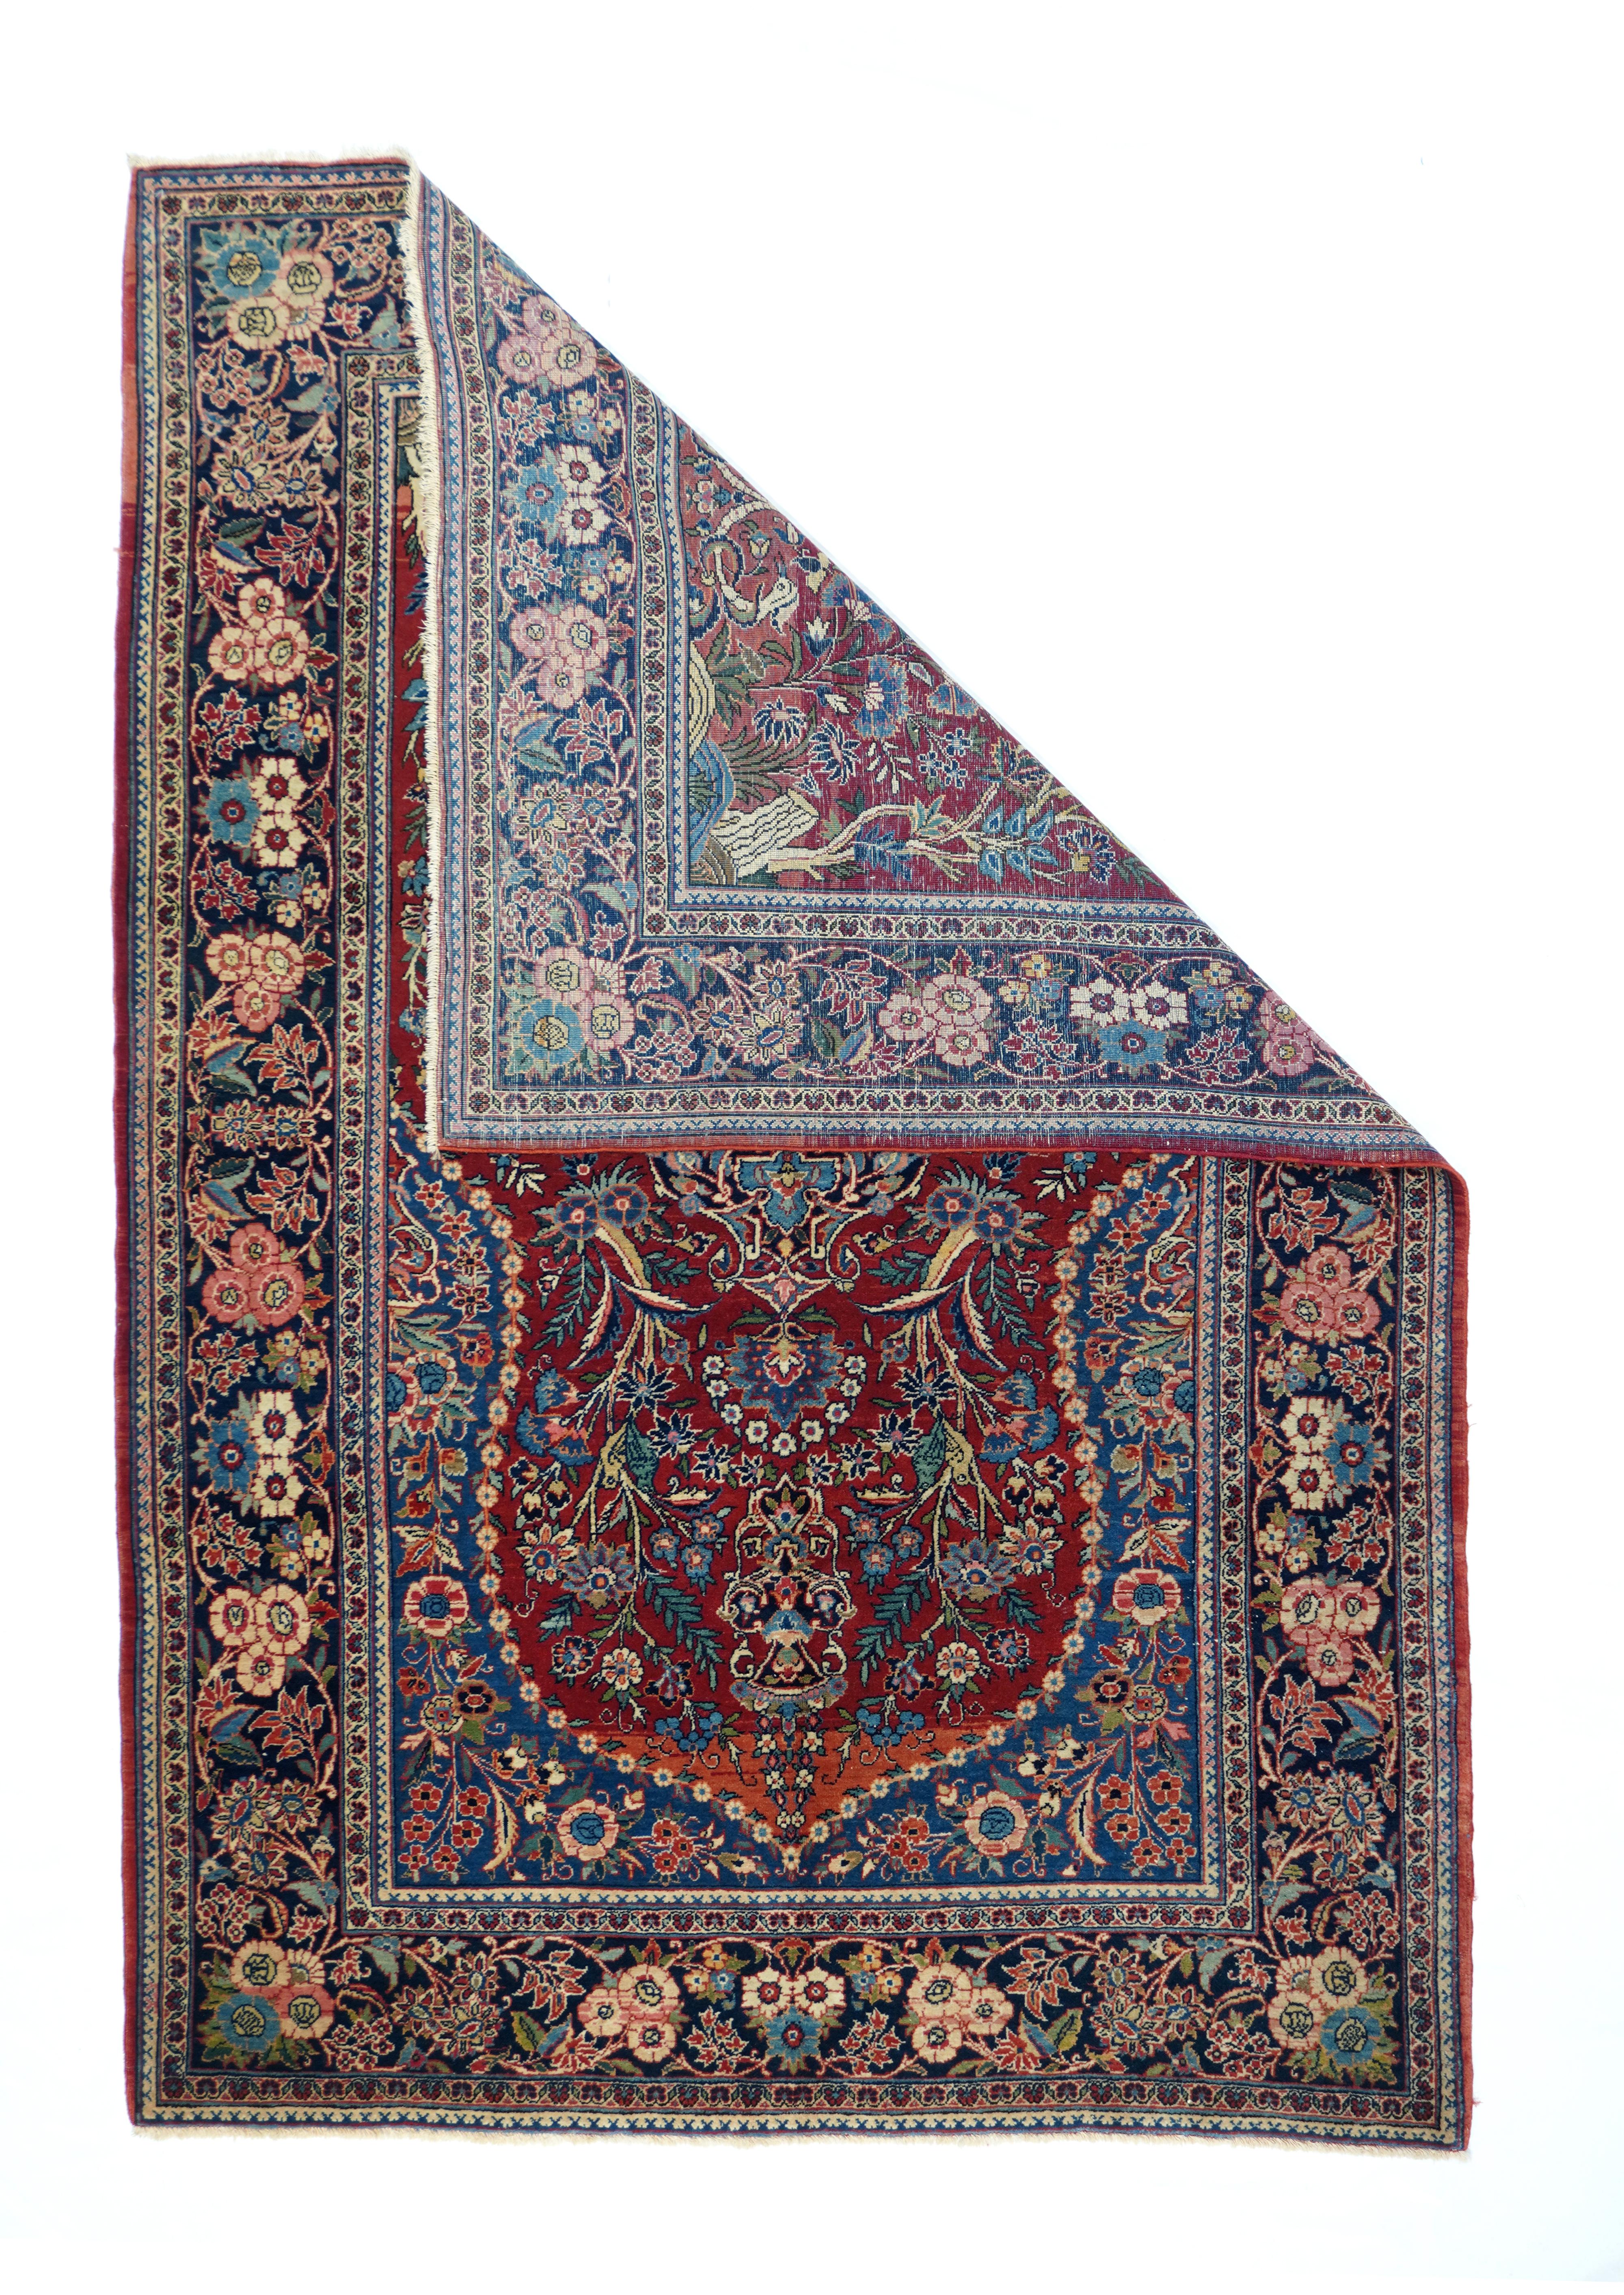 Vintage Persisch Kashan Teppich 4'.4'' x 6.6''. Das leicht gekniffene, spitz zulaufende, rote Nischenfeld dieses gut geknüpften zentralpersischen Townes-Teppichs basiert auf einer schwarzen Amphora-Vase, in der sich üppige, vollflächige Gartenblumen